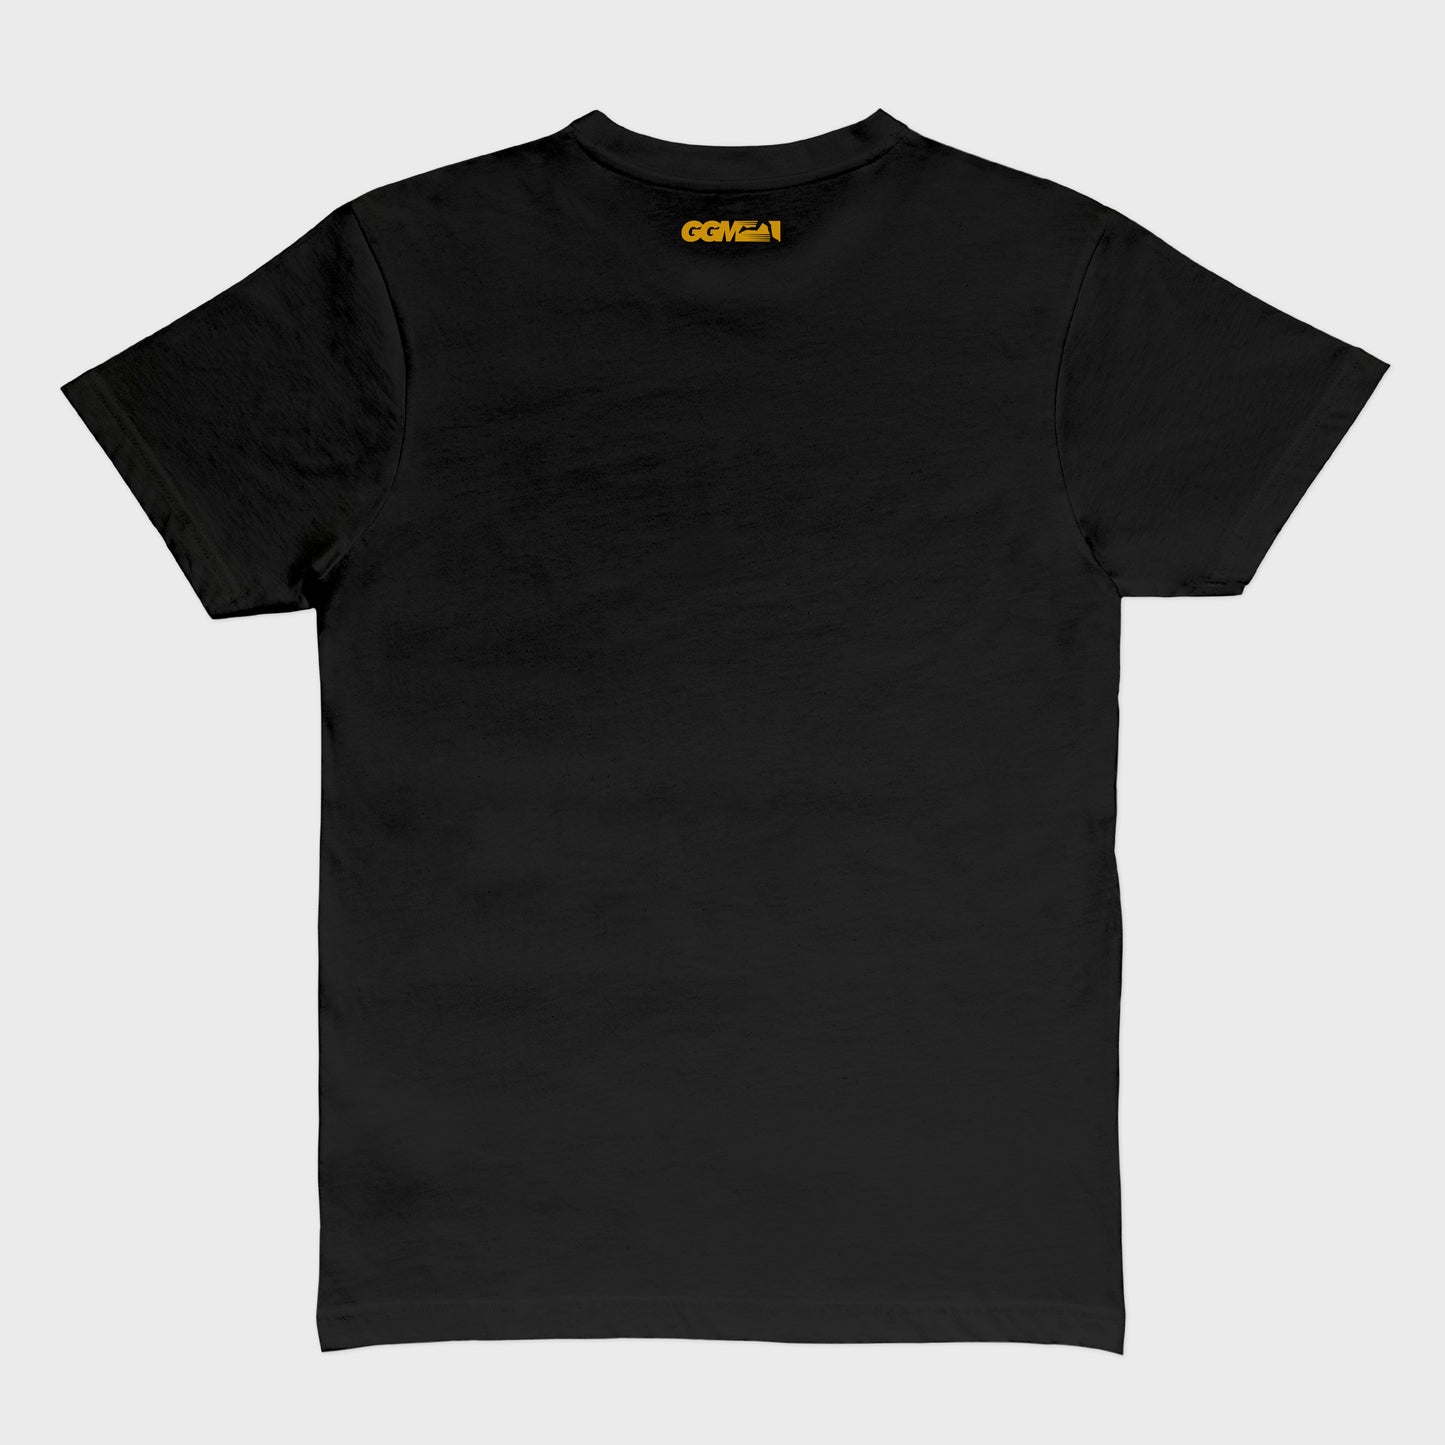 Hustle State of Mind T-Shirt - Black/Gold